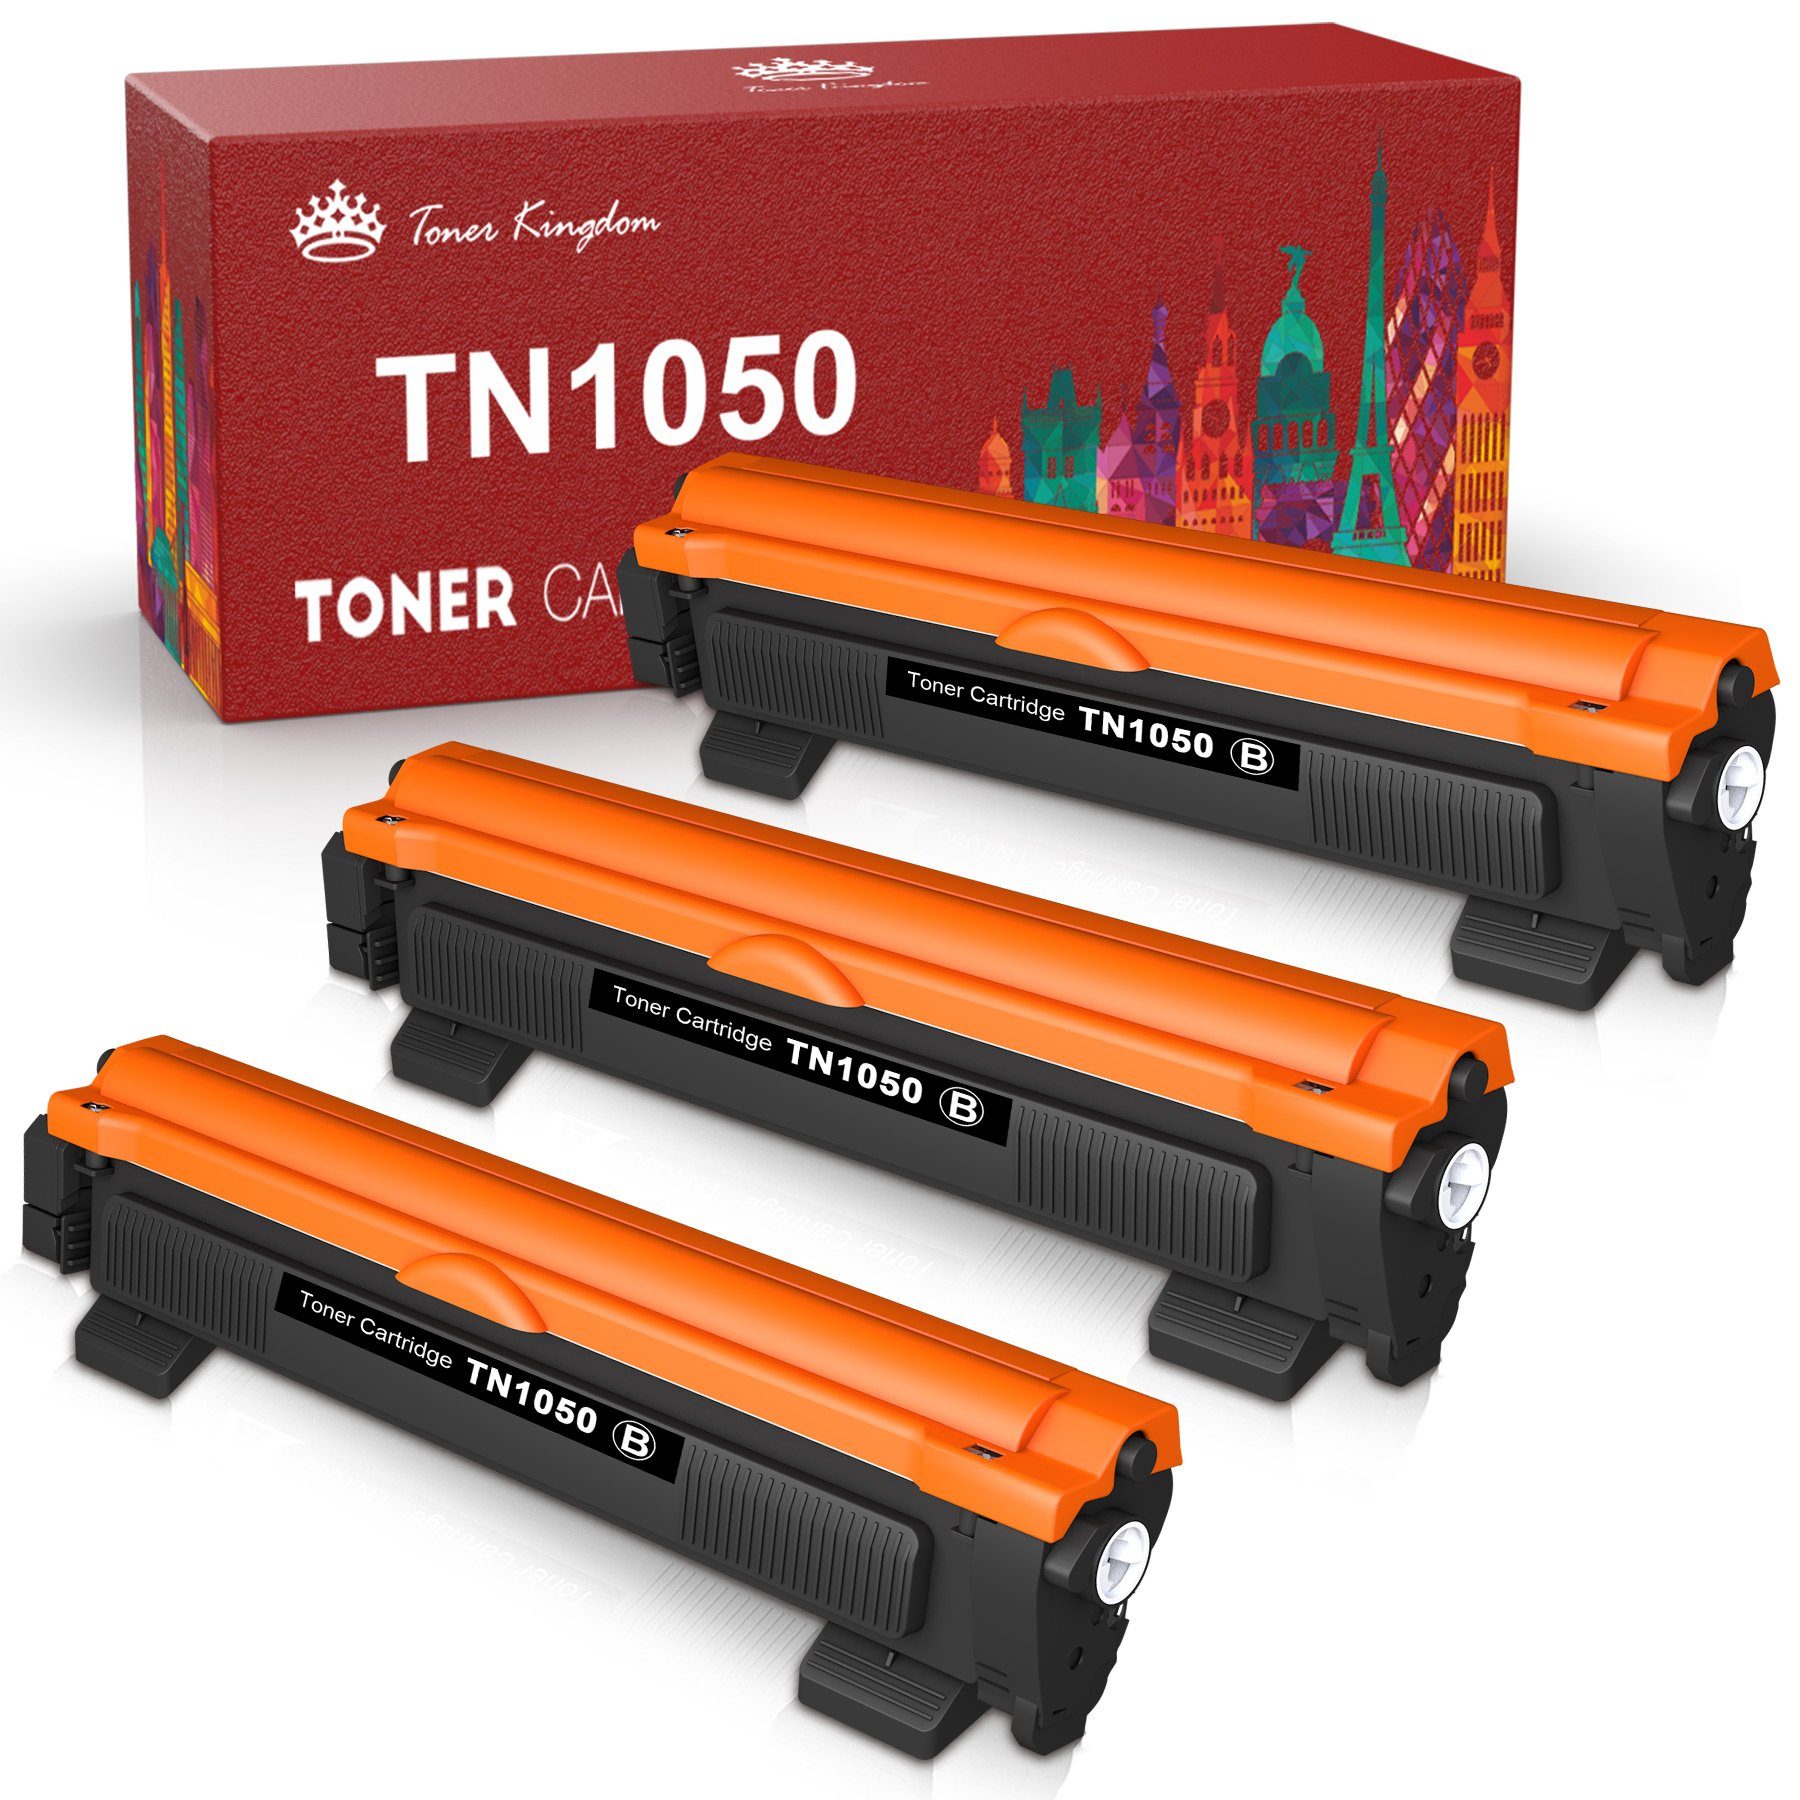 Toner Kingdom Tonerpatrone TN1050 TN 1050 Brother für MFC-1910W MFC-1810